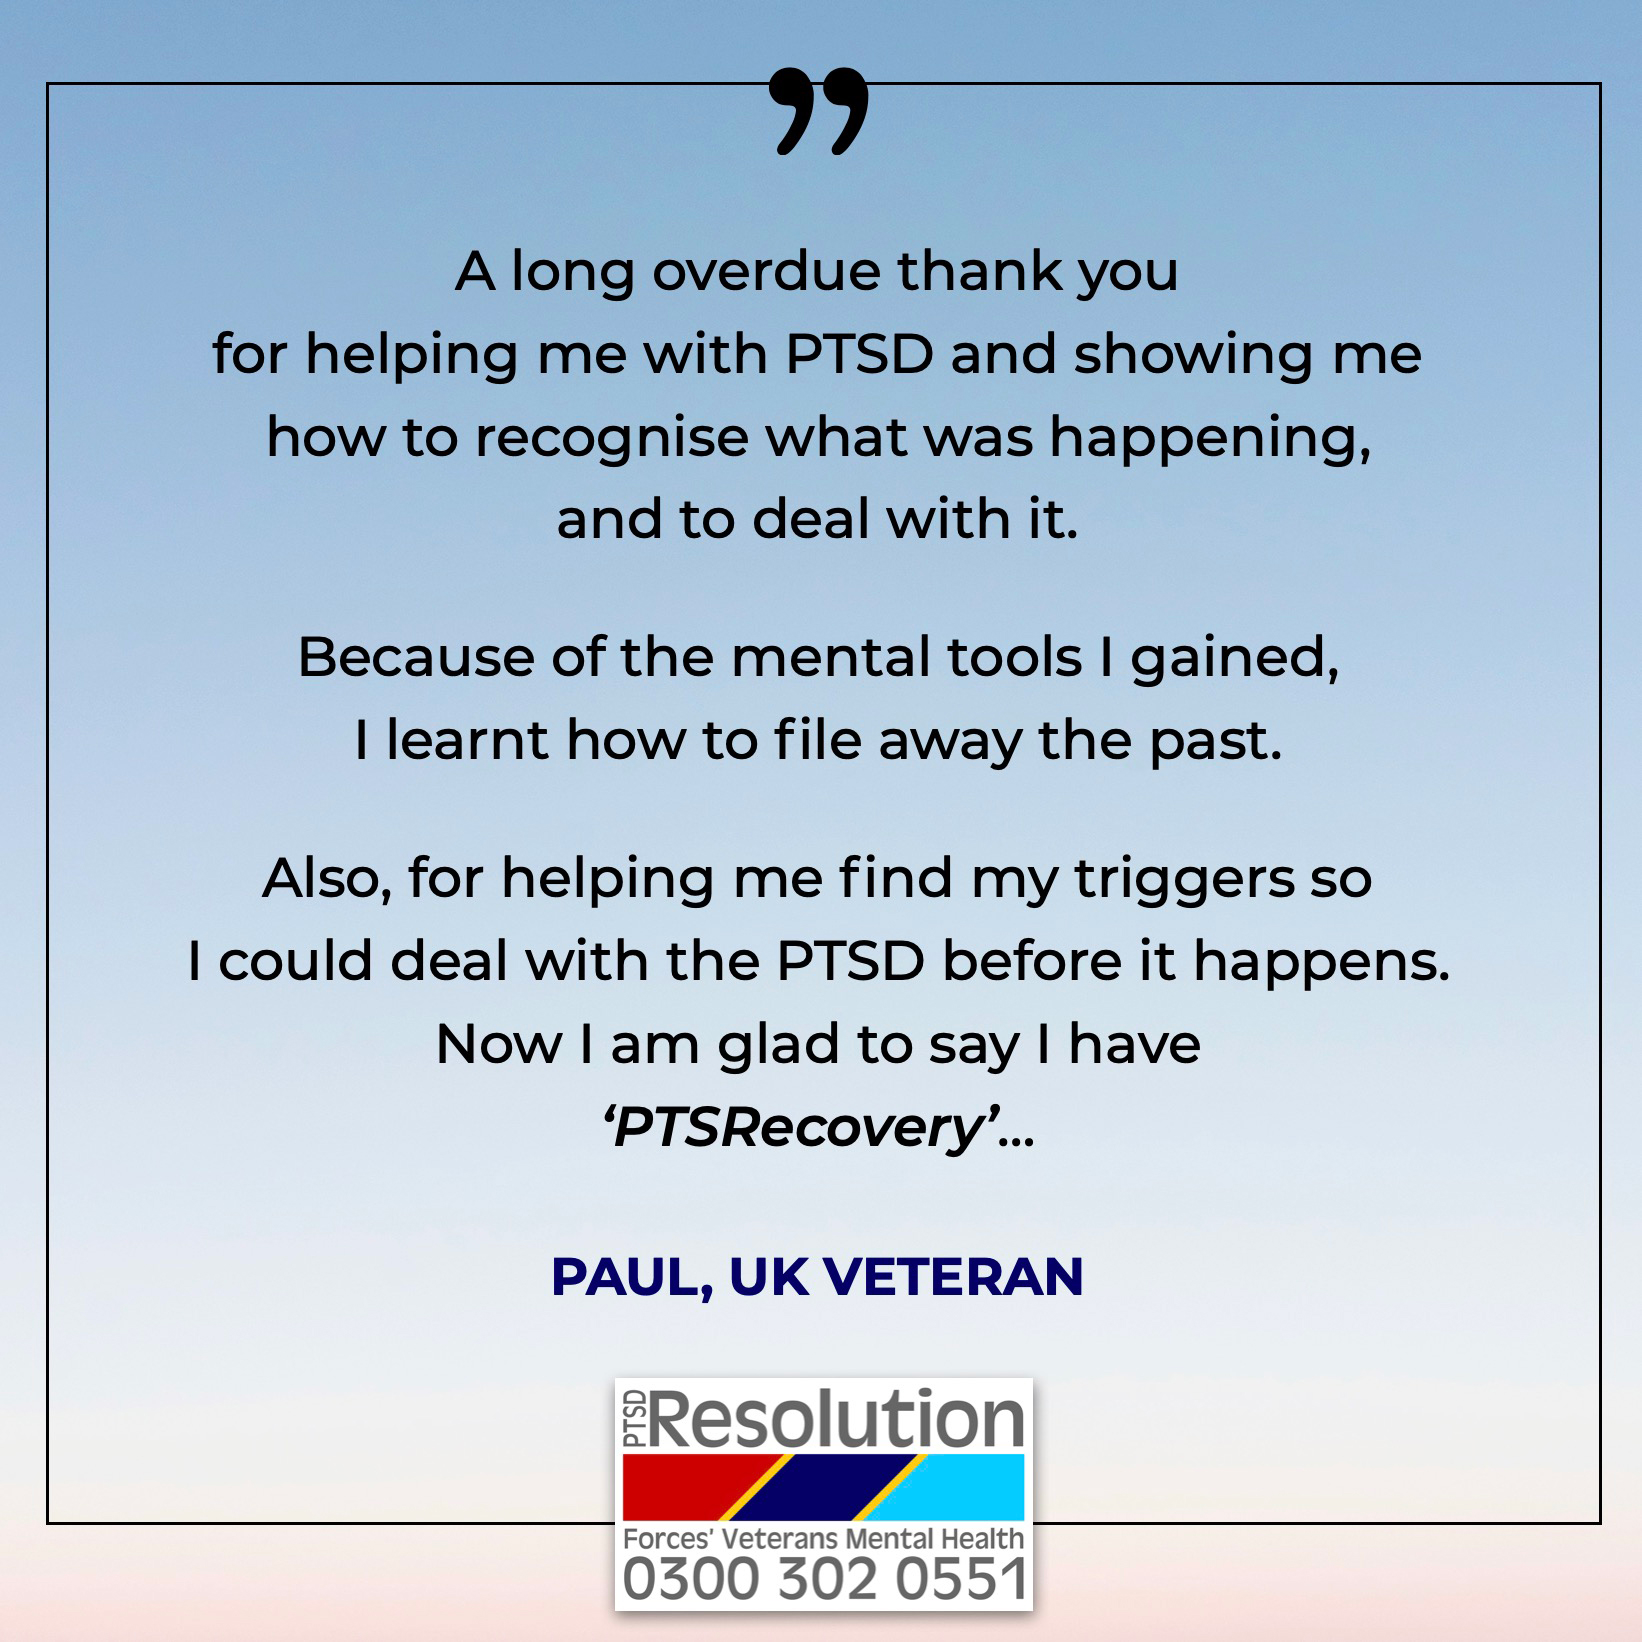 Paul-UK Veteran